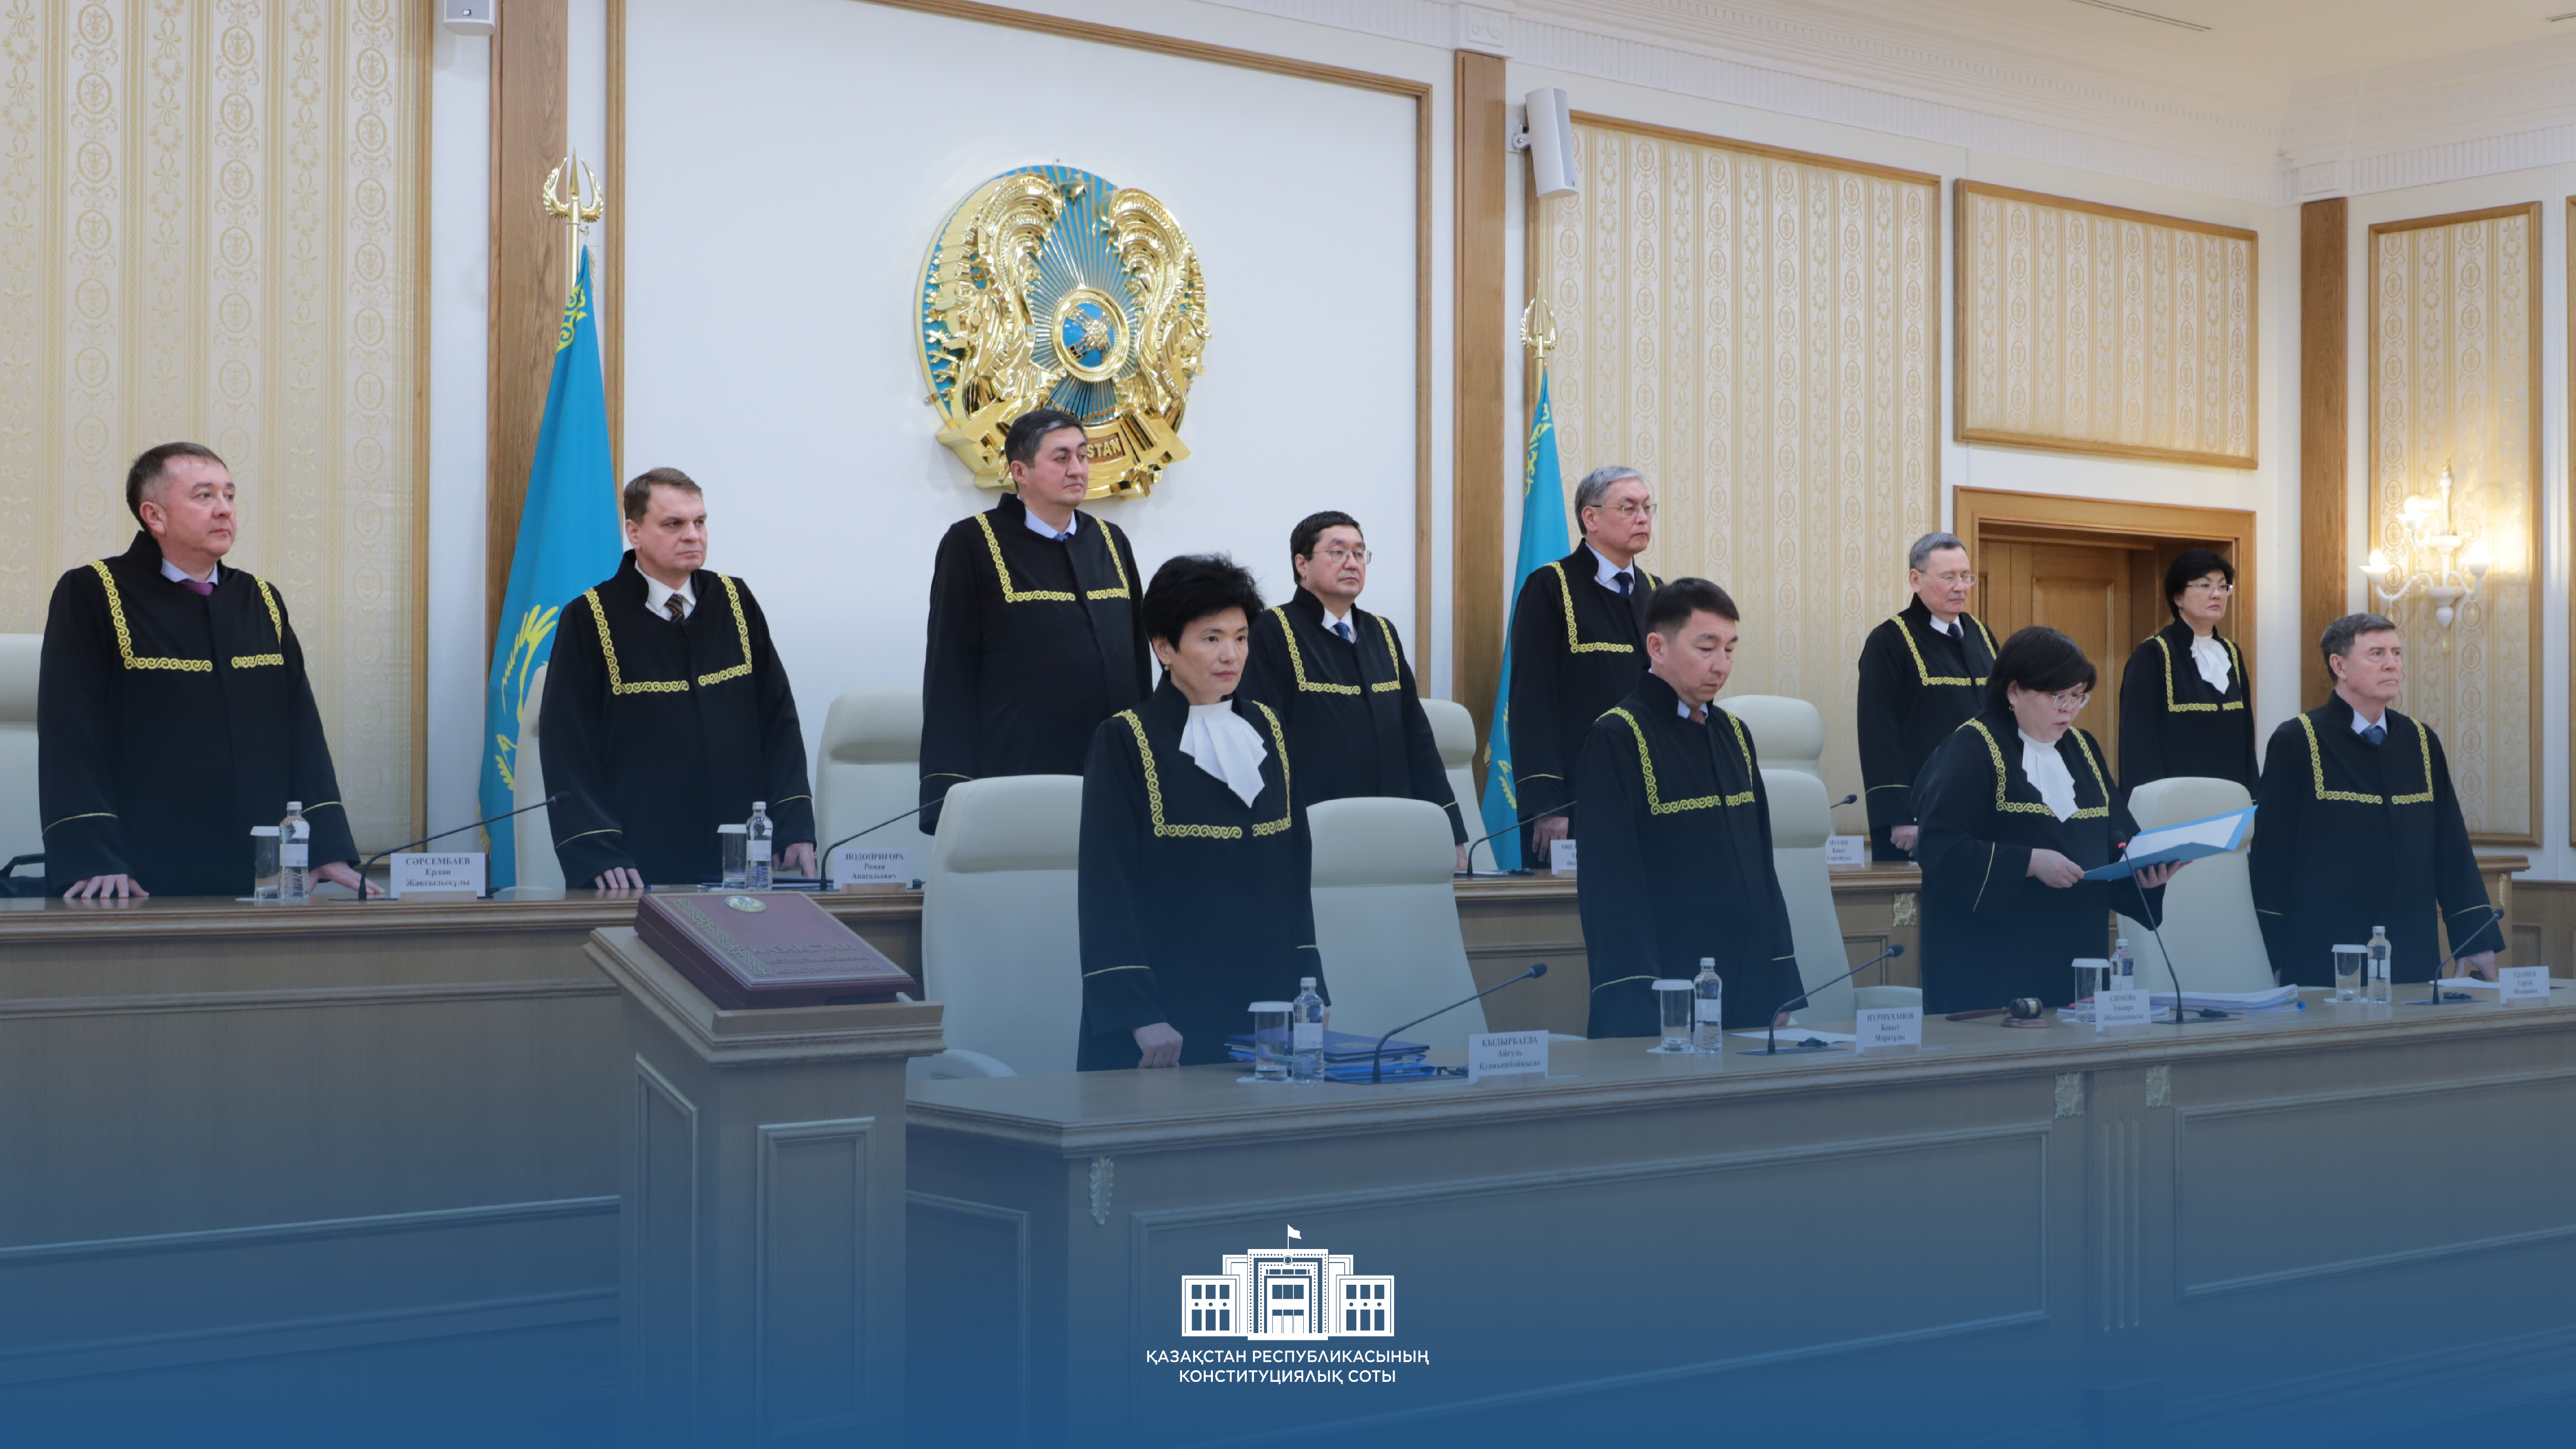 Судов в казахстане